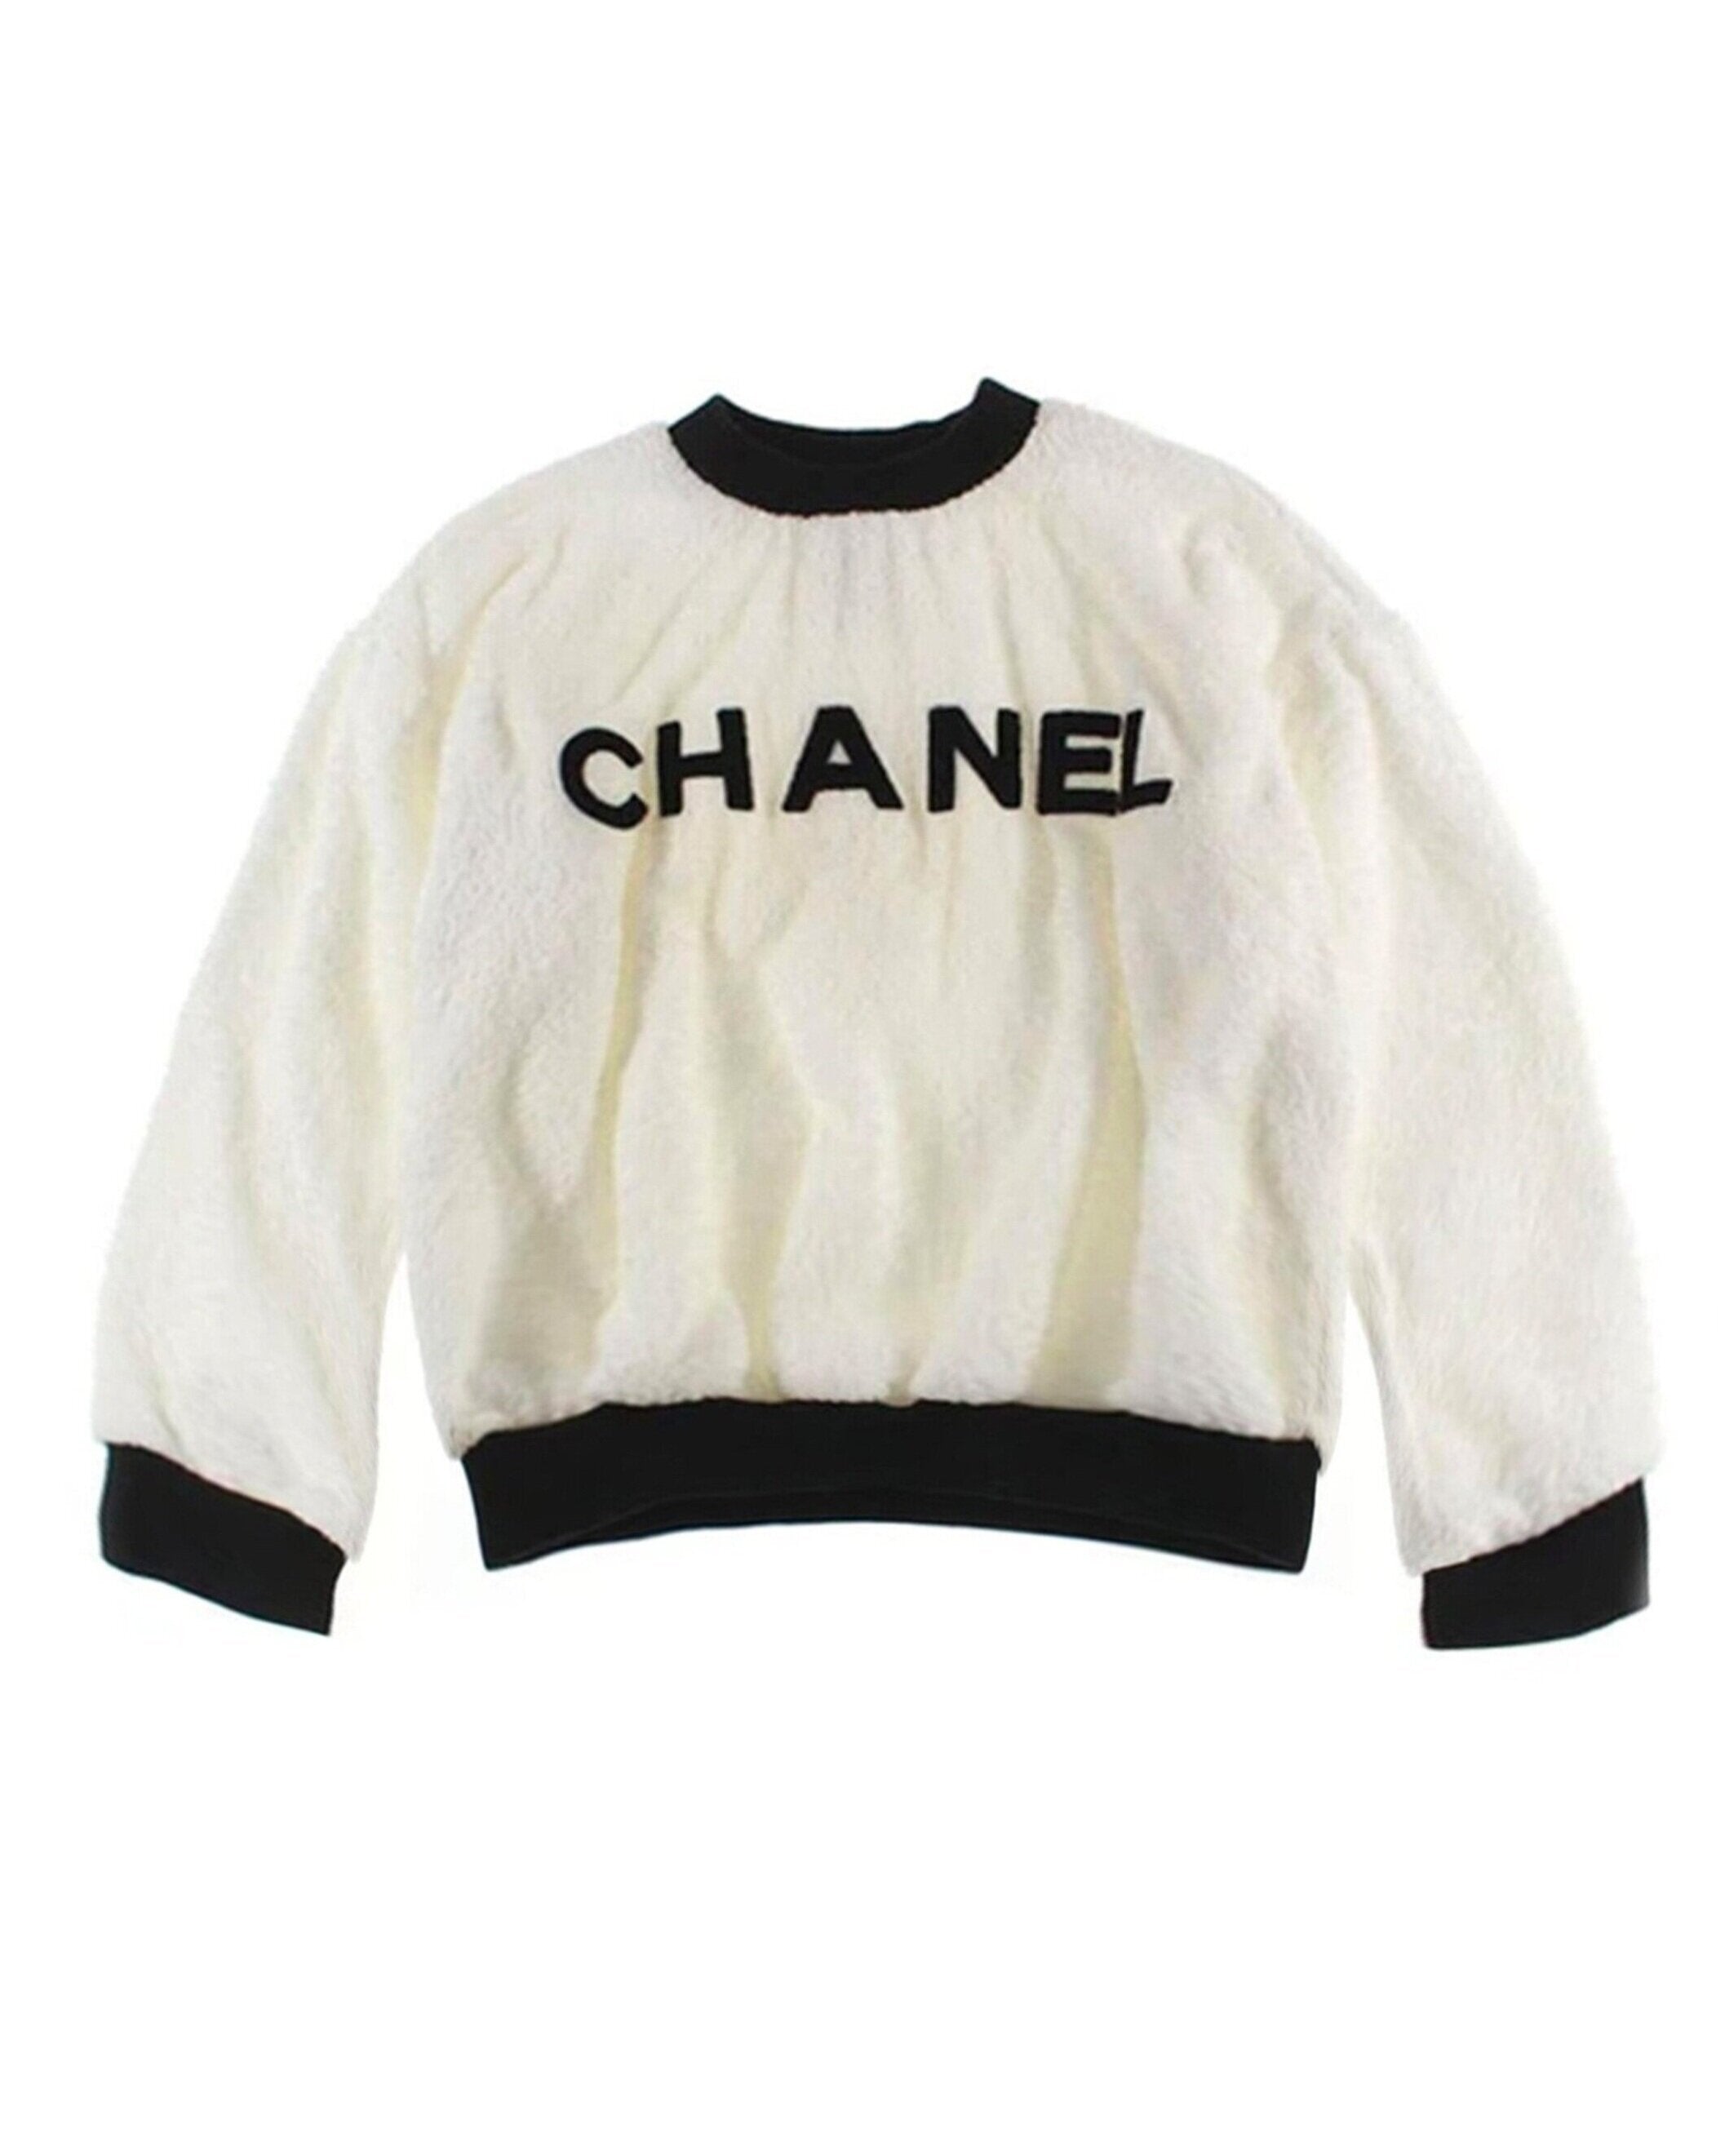 Chanel Top Vintage Authentic Chanel Blouse CC Logo Rare 